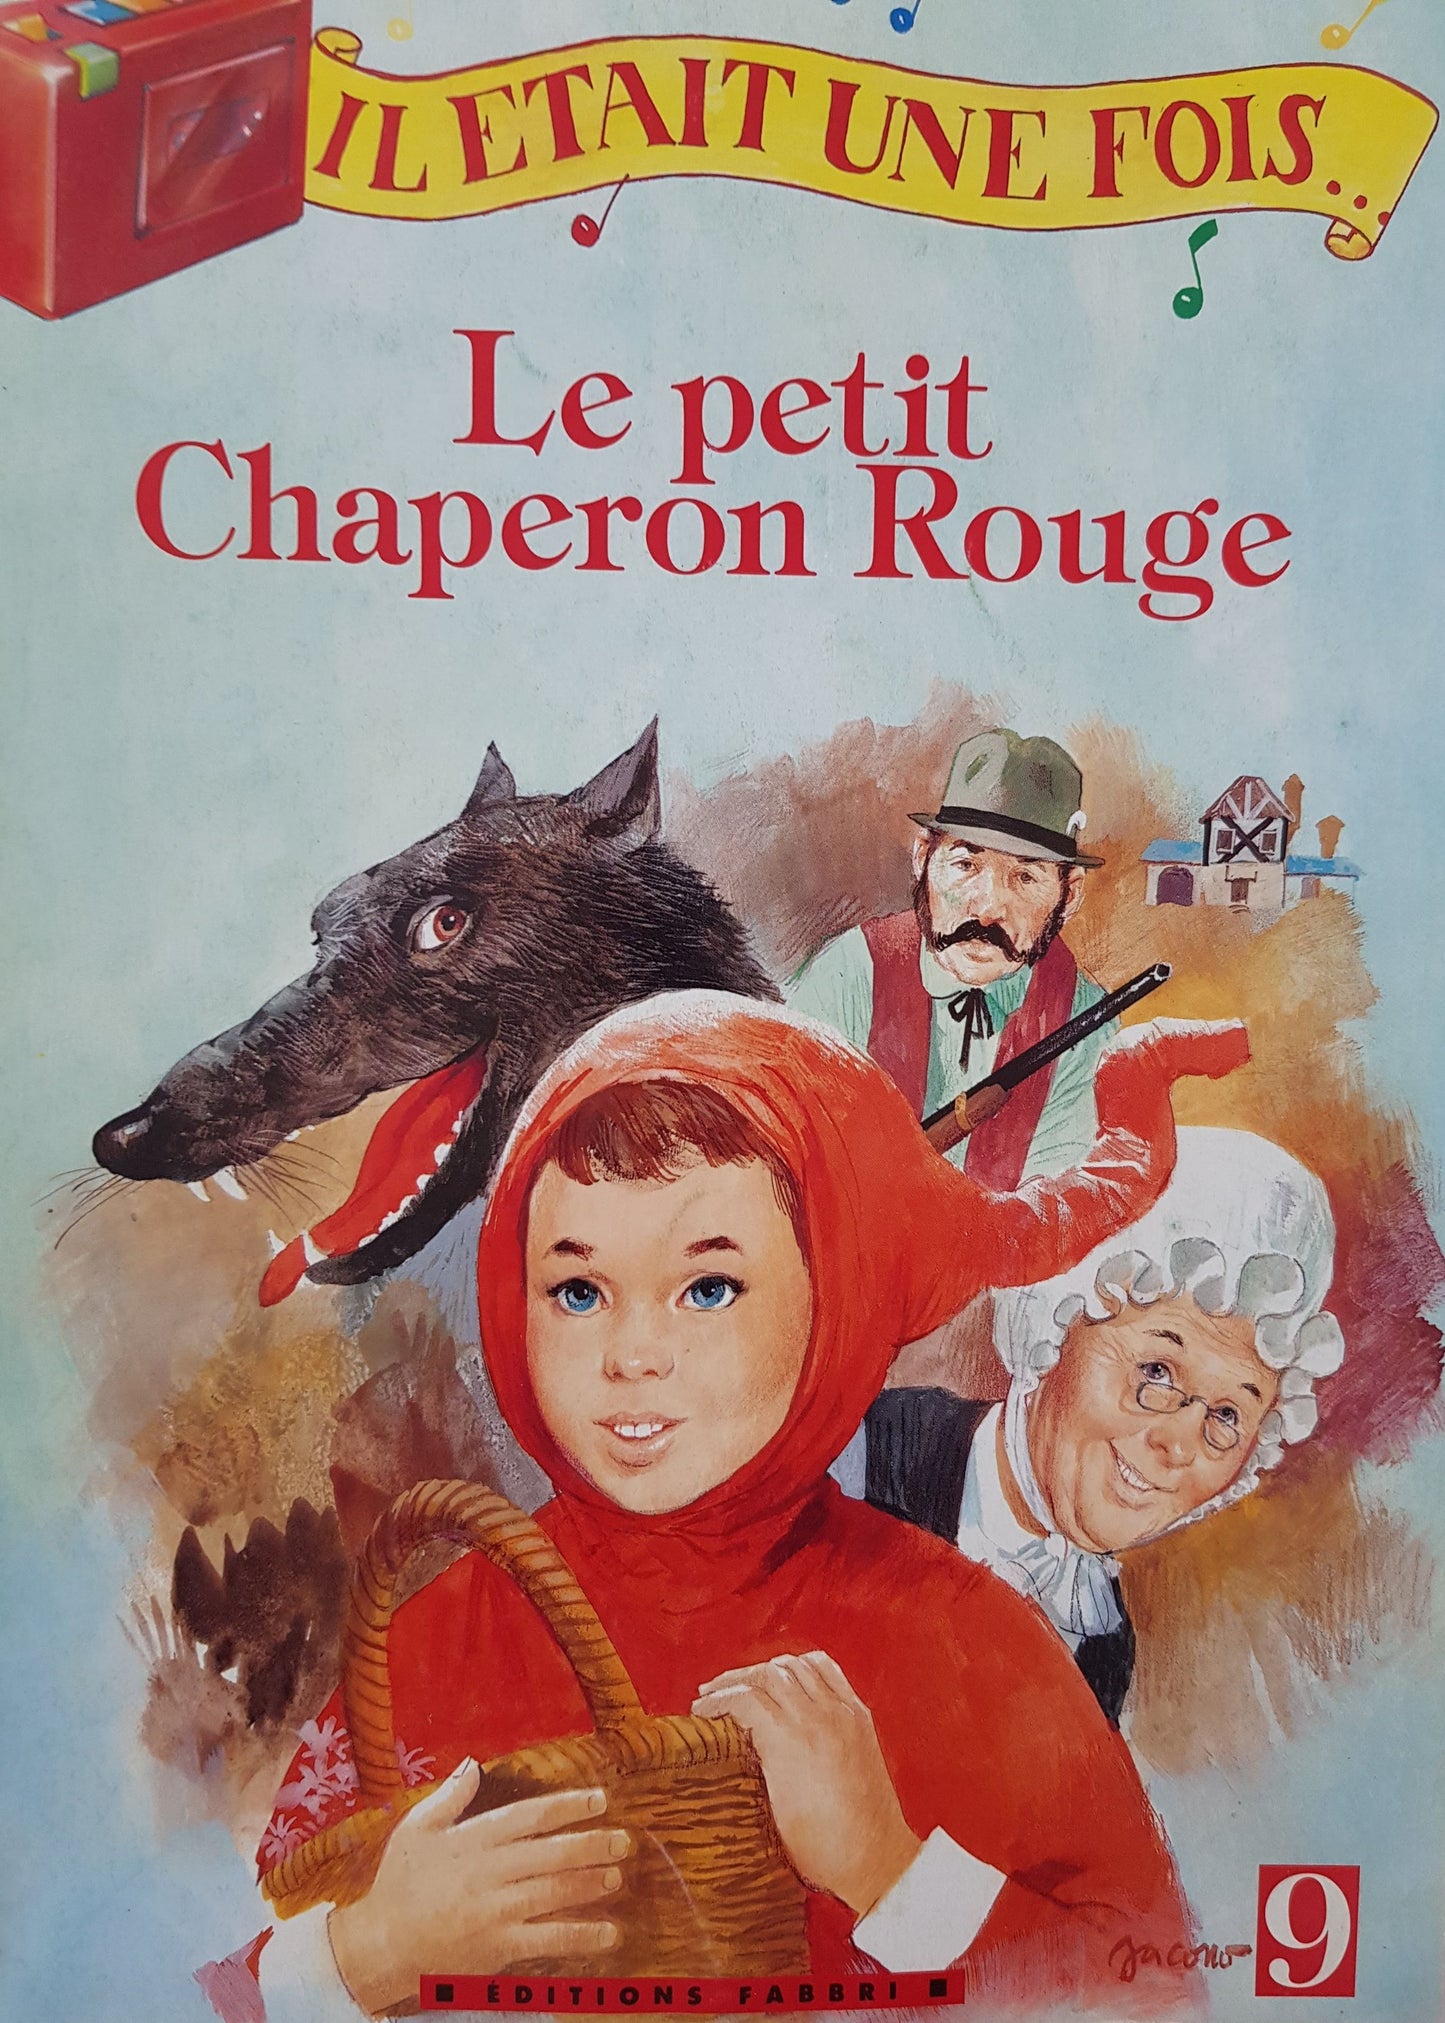 3 Livres: Le petit chaperon rouge, Blanche neige et les sept nains, L'oie aux oeufs d'or Well Read Not Applicable  (4598533652535)